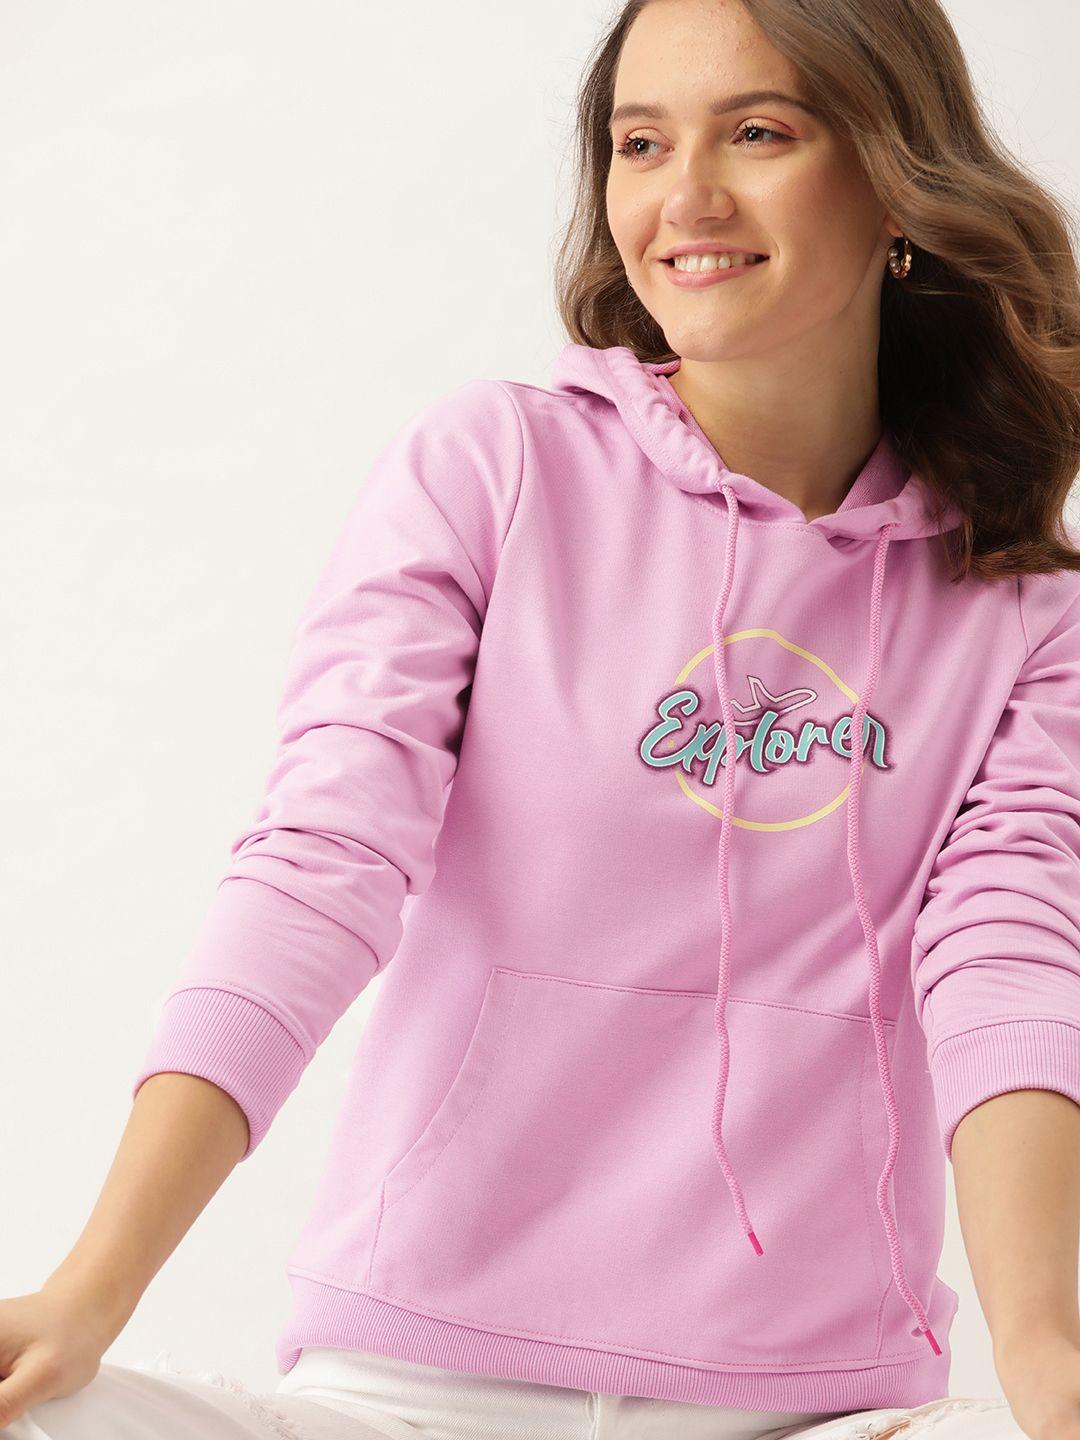 dressberry-women-pink-printed-hooded-sweatshirt